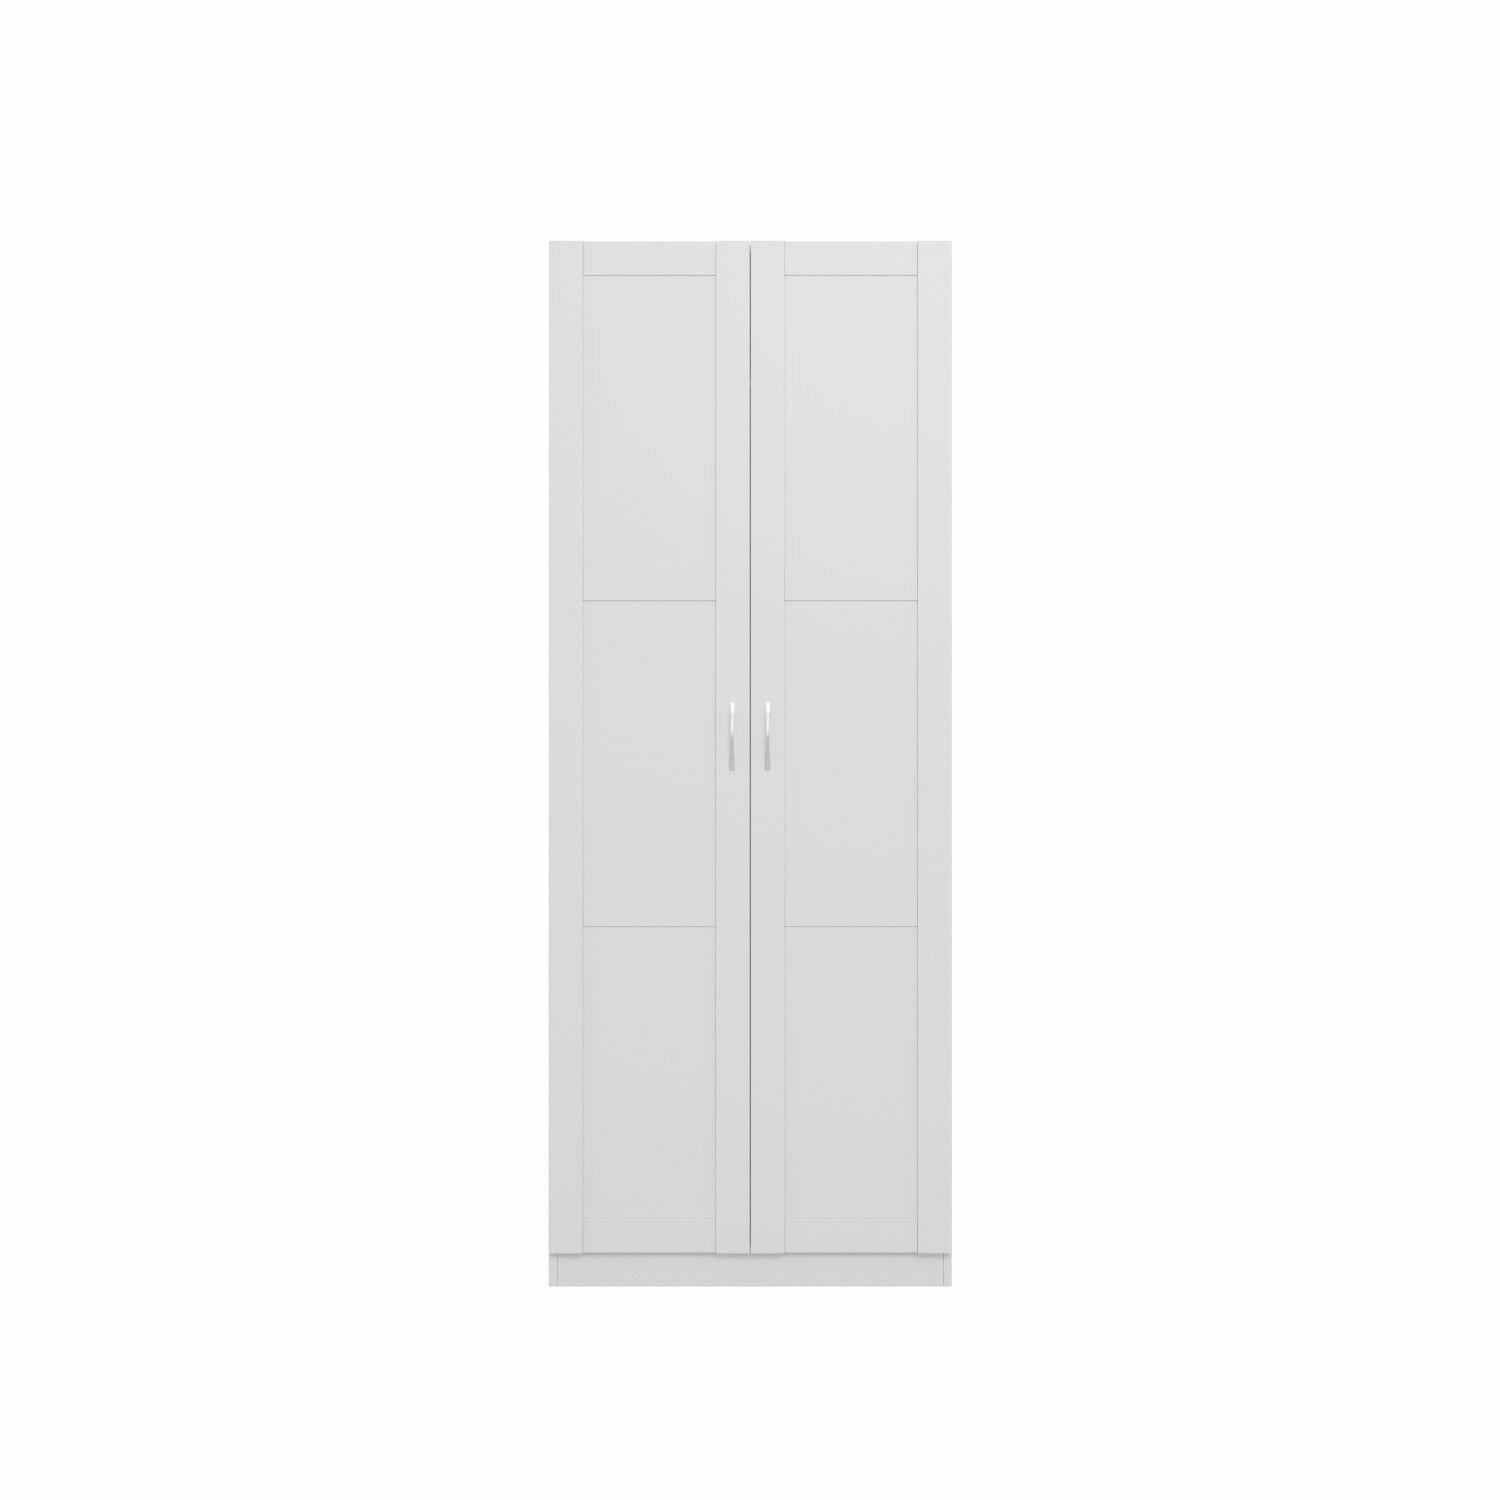 Пегас Шкаф шведский стандарт 2 двери сборные белый